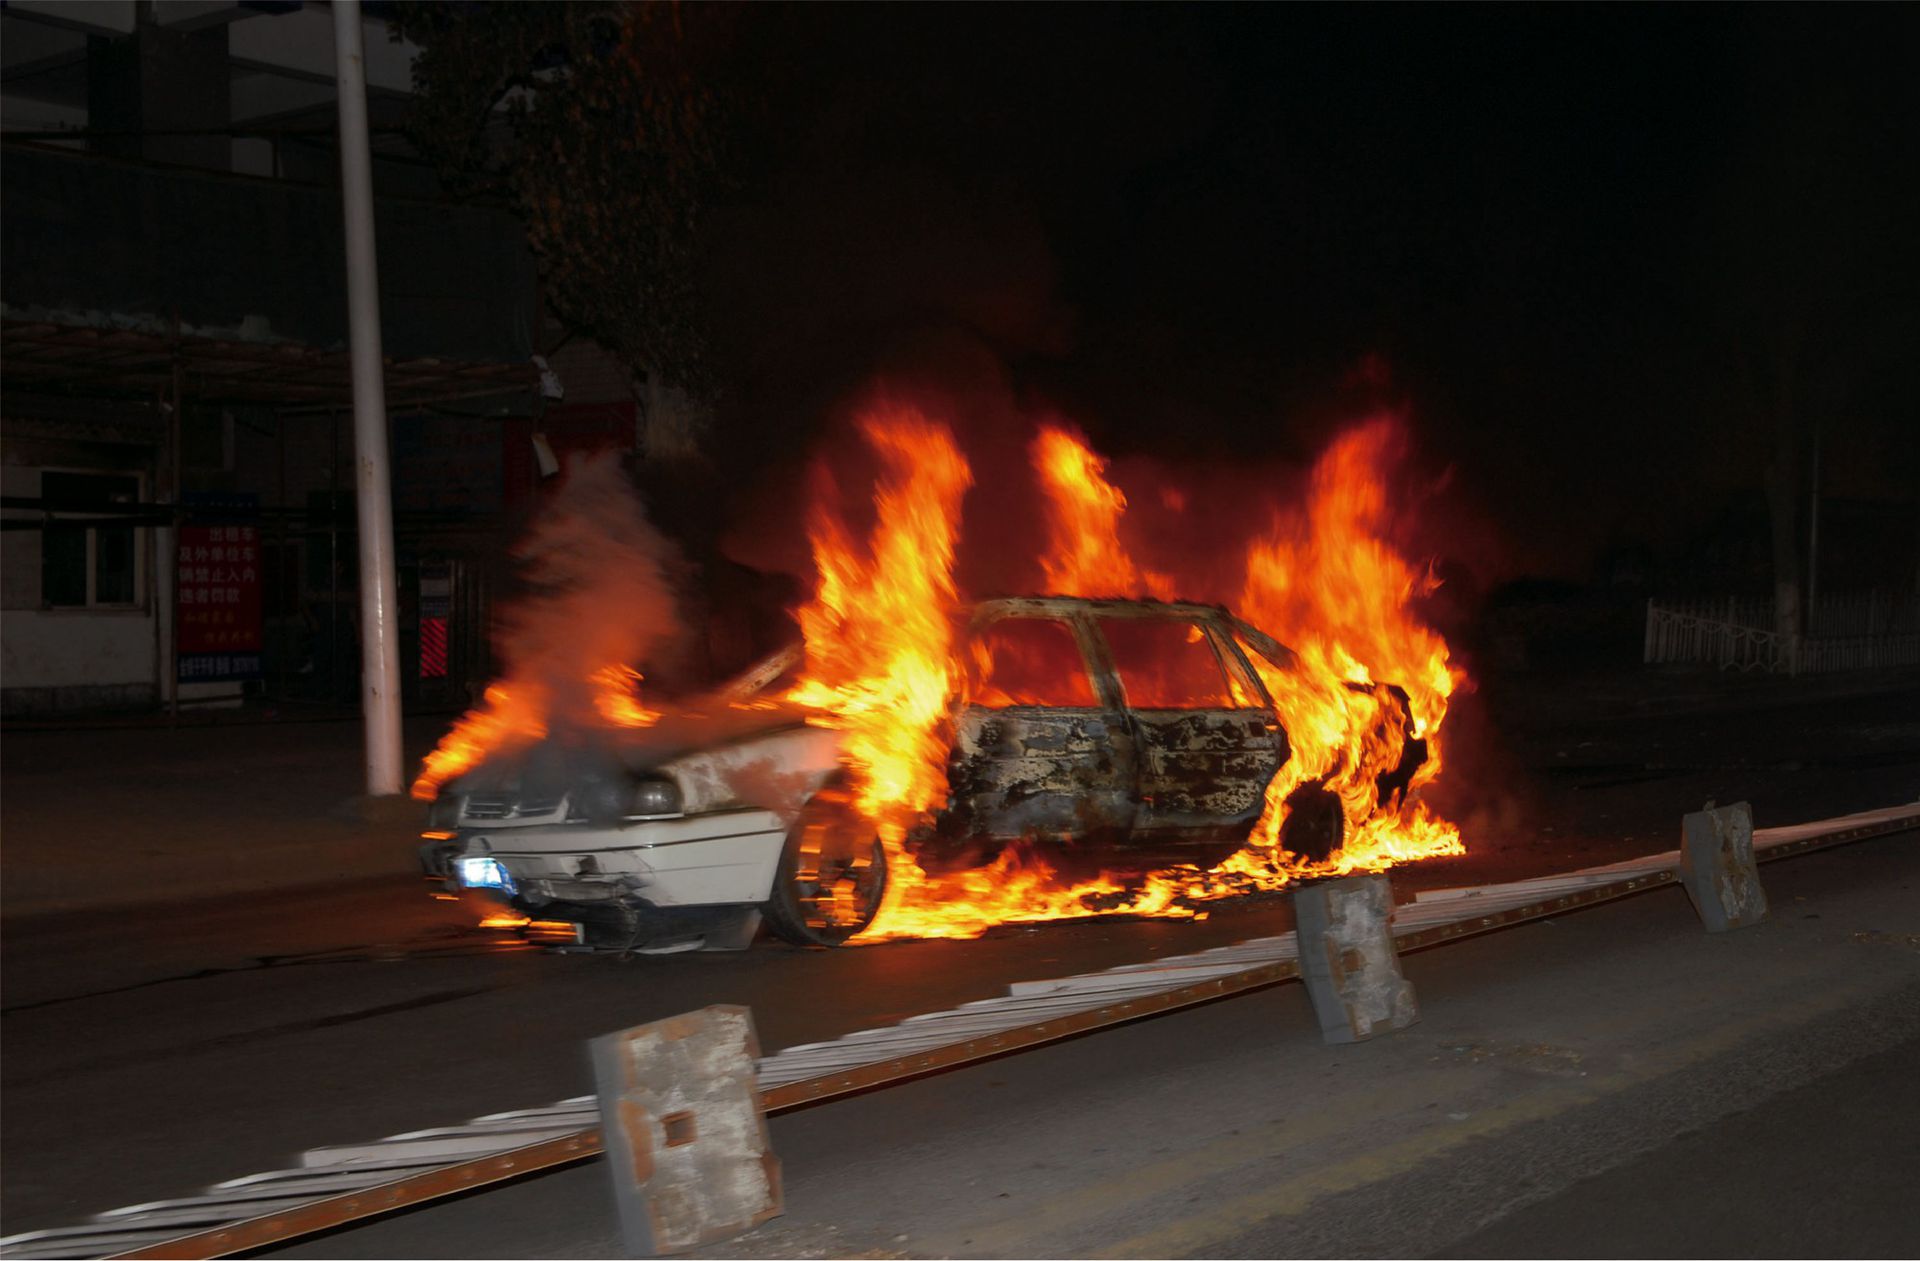 2009年7月5日，“东突”组织策划实施了乌鲁木齐市打砸抢烧严重暴力犯罪事件，共造成197人死亡、1,700多人受伤、331个店铺和1,325辆汽车被砸烧，众多公共设施损毁。（新华社）